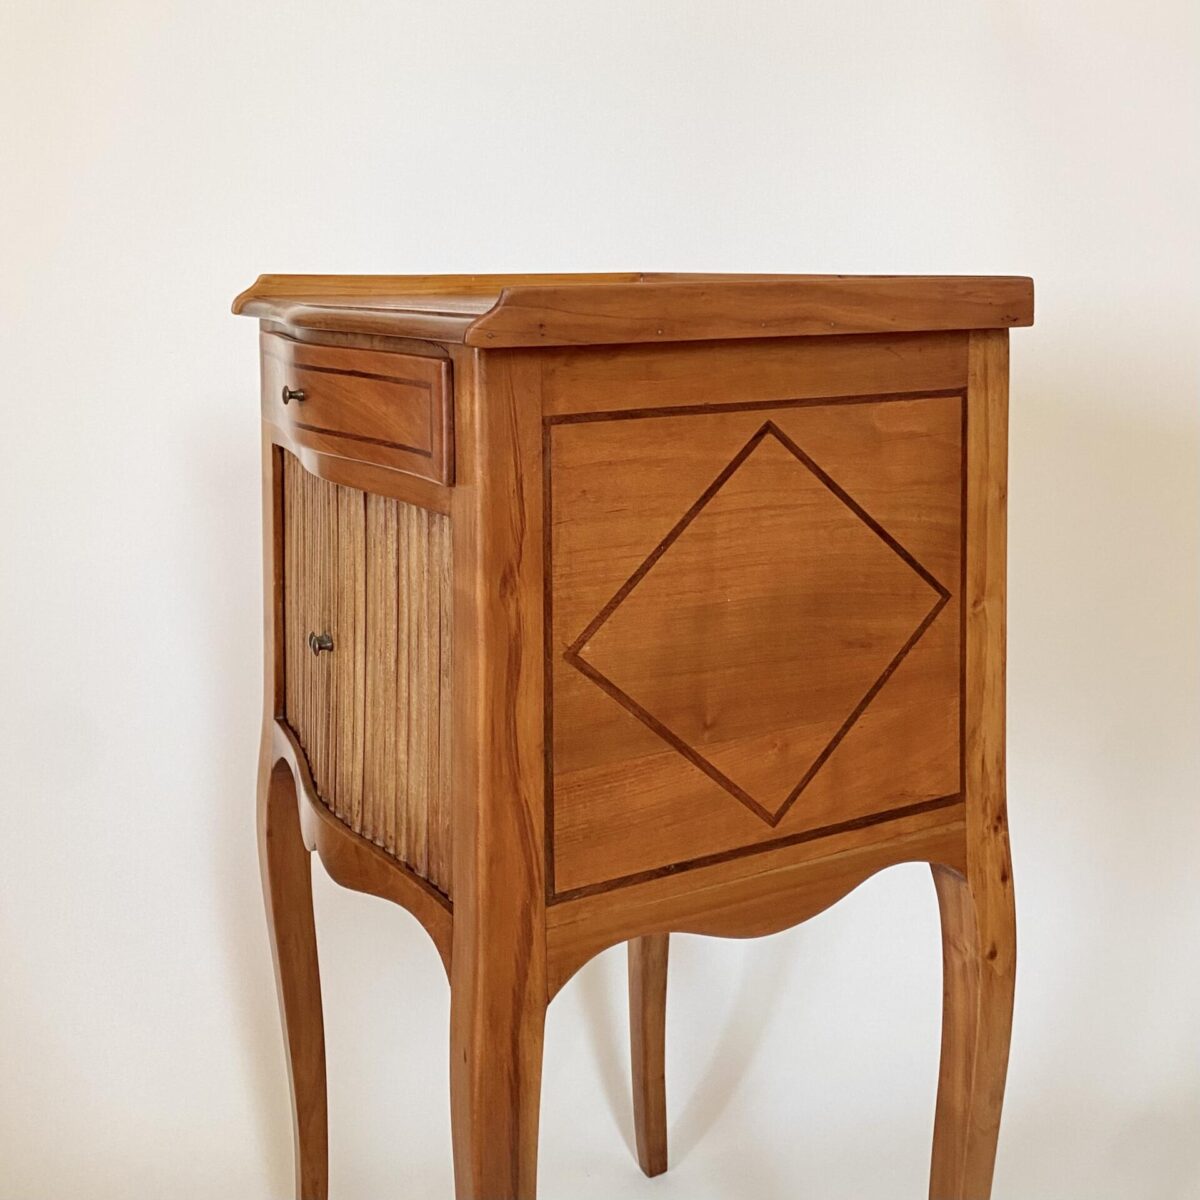 Deuxieme.shop Kleiner Nachttisch aus dem 19. Jahrhundert, aus Kirschbaum mit Nussbaum Intarsien. Pfeilerschränkchen kleine Liseuse Beistelltisch 1840.